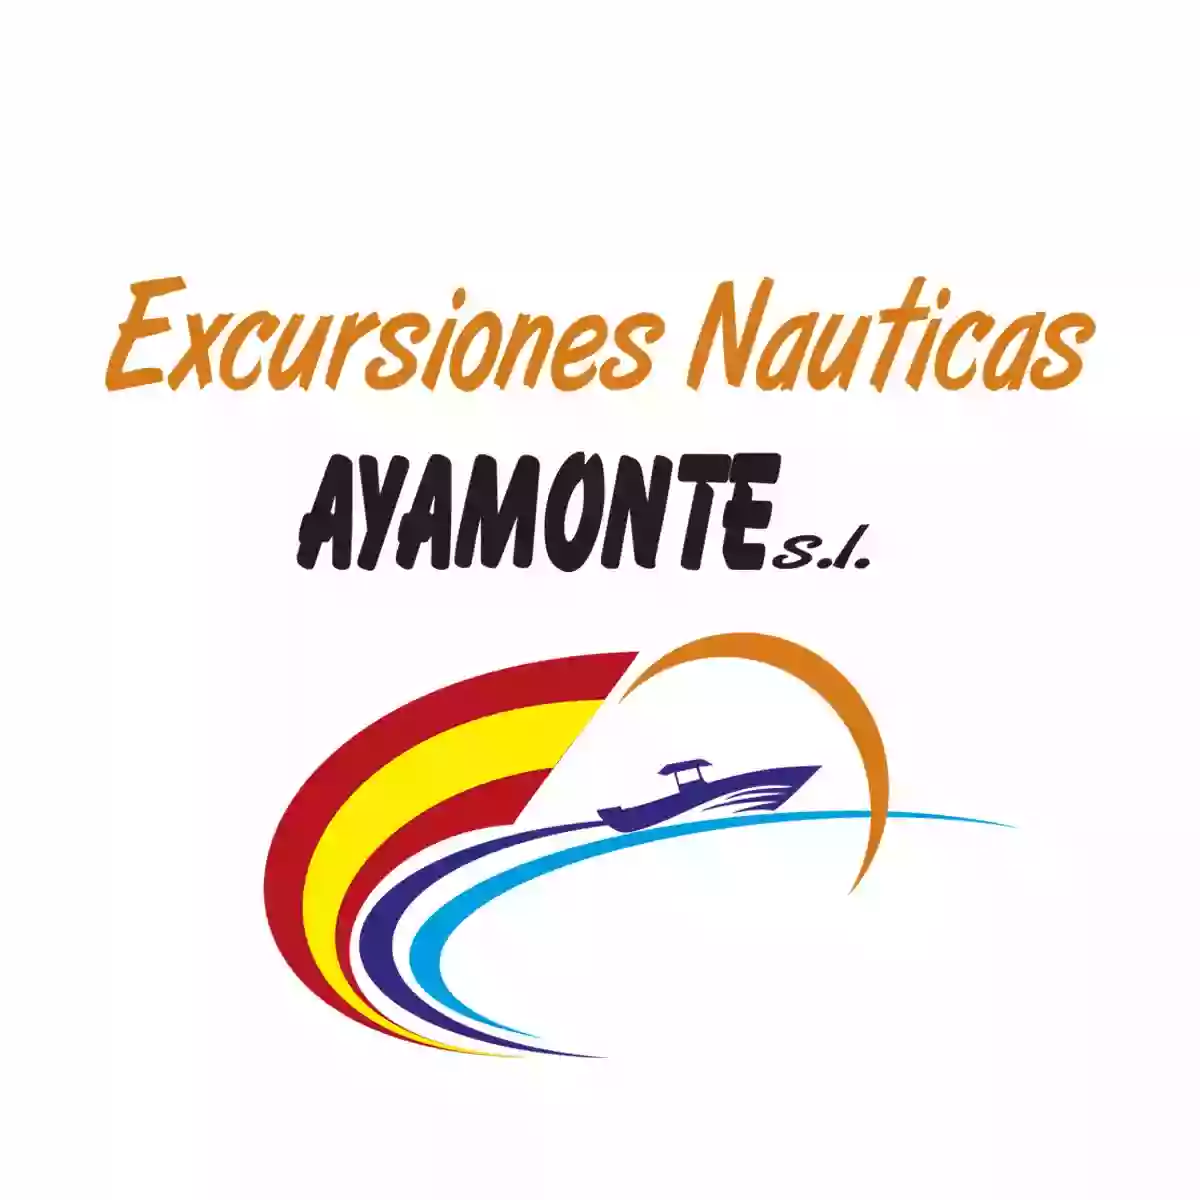 Excursiones Nauticas Ayamonte S.L